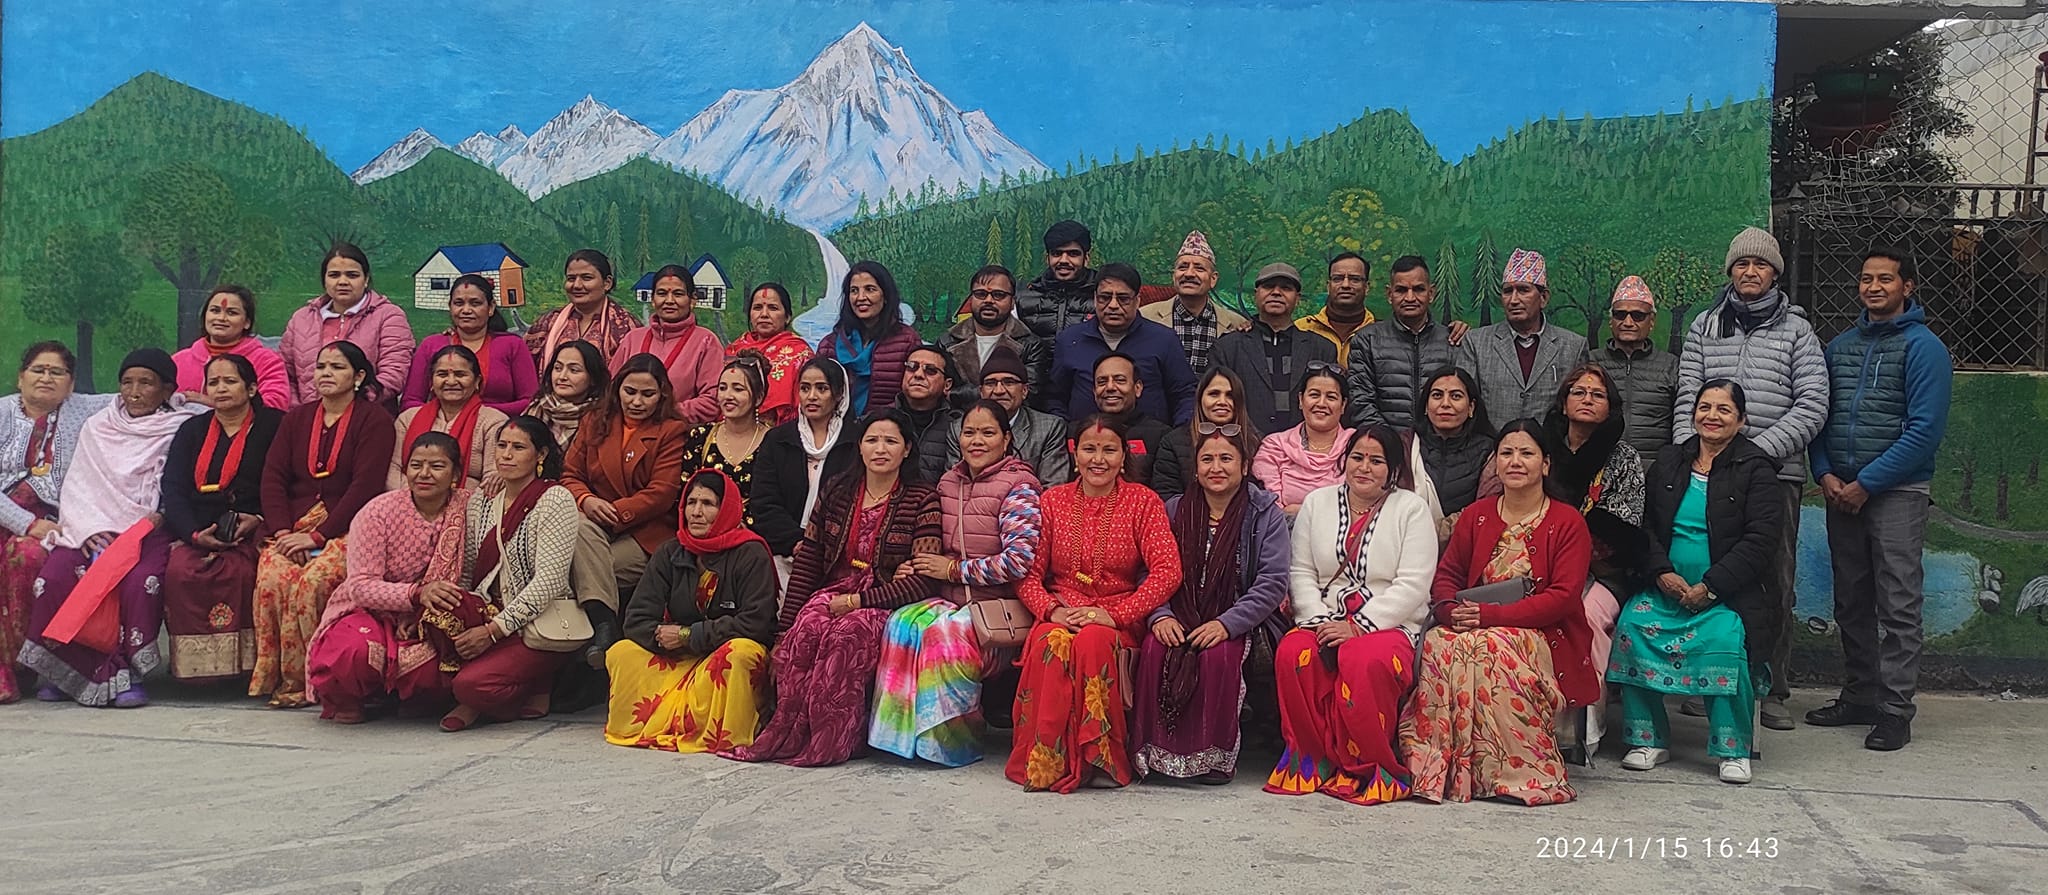 प्रसंसा सिर्जनशील महिला समाजले काठमाडौँमा डेउडा खेलेर मनायो मकर संक्रान्ति